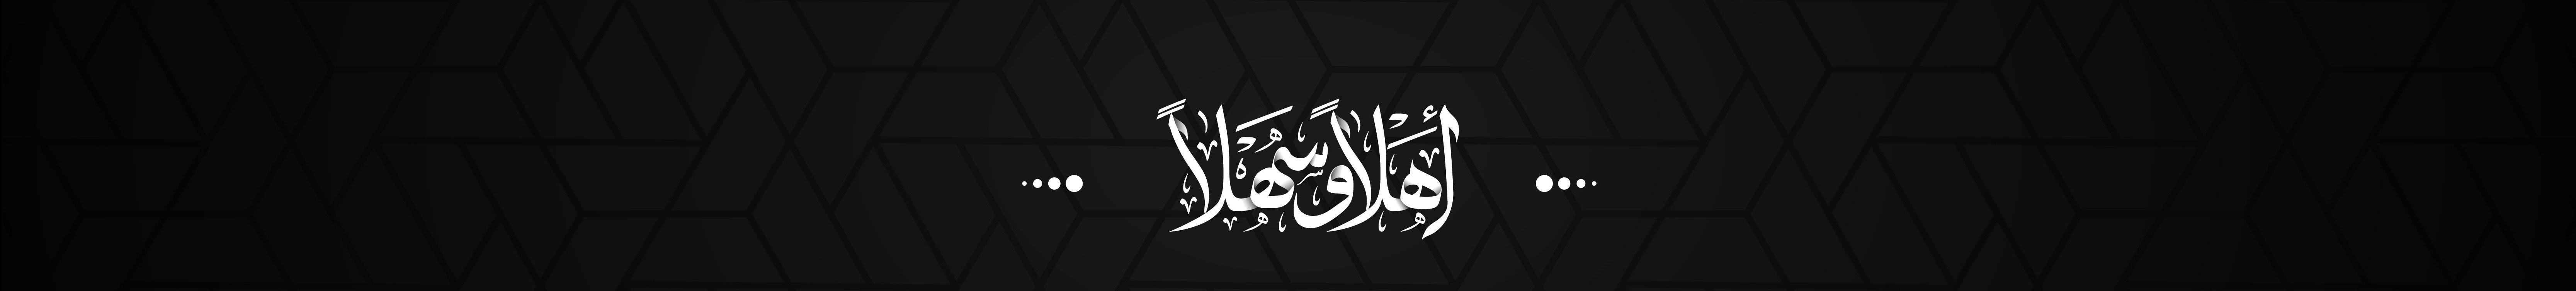 Mohamed Nagy ✪'s profile banner